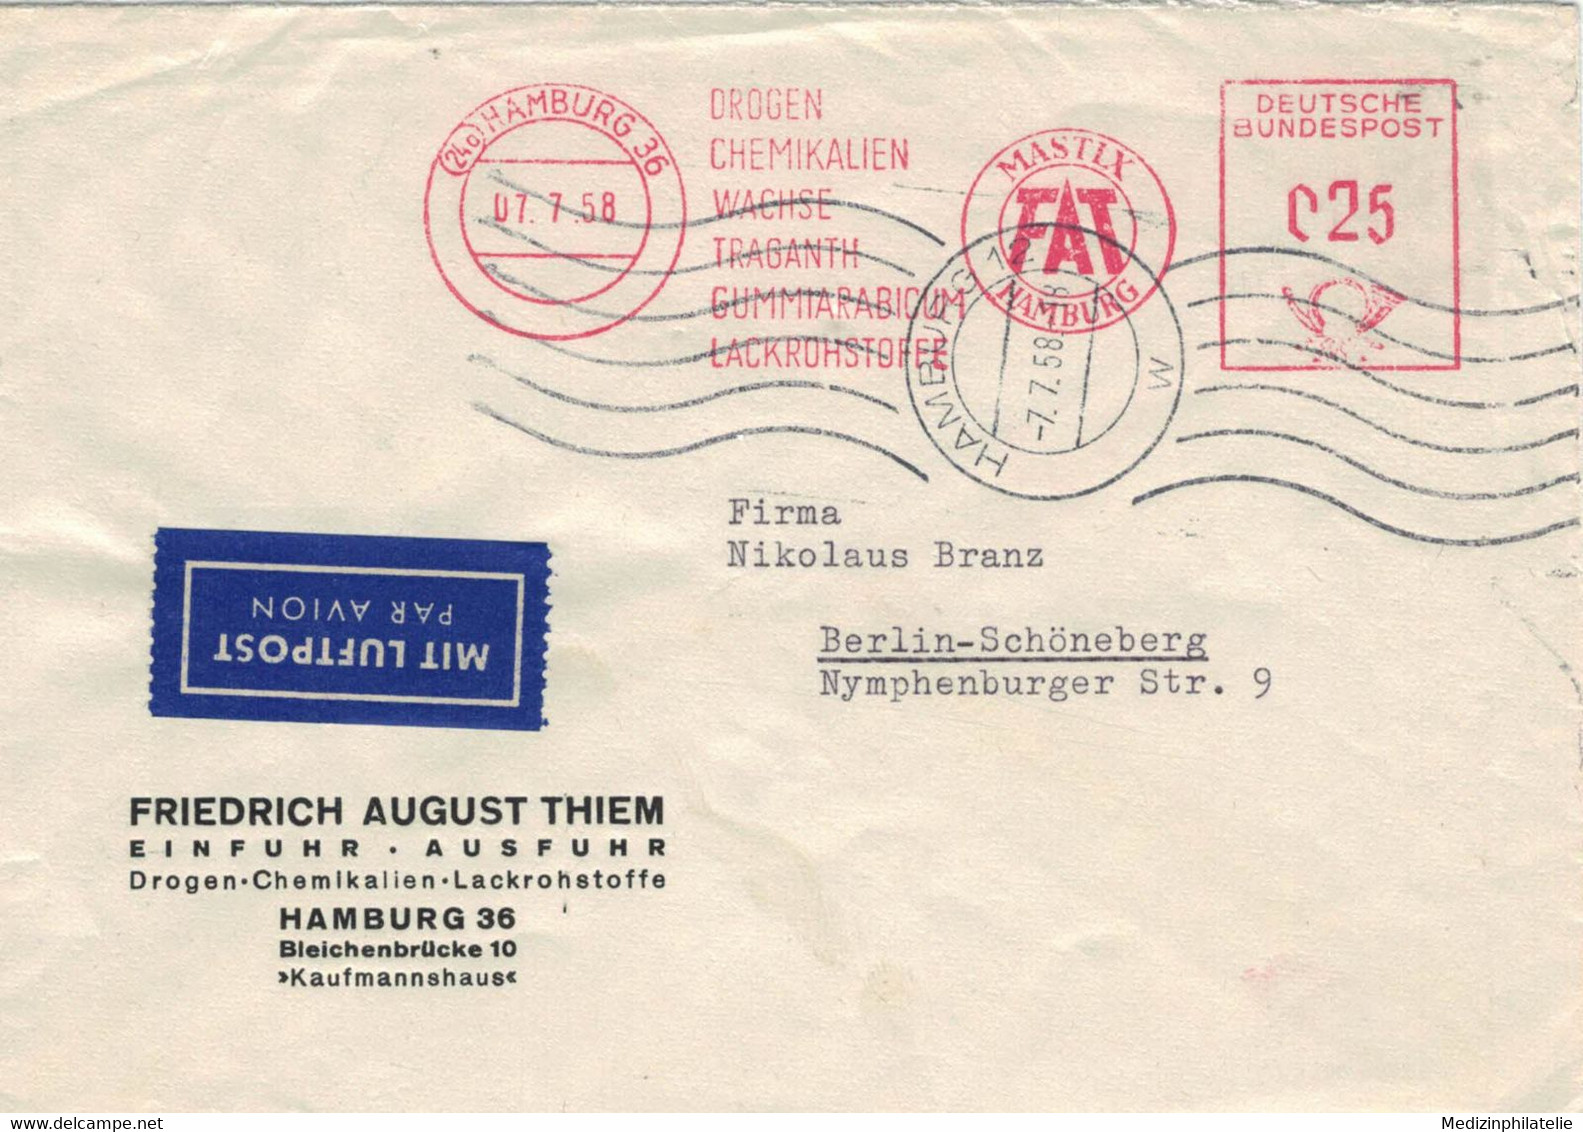 24a Hamburg Friedrich August Thiem Drogen Lackrohstoffe Chemikalien Wachse Traganth Gummiarabicum Mastix 1958 - Pharmacy